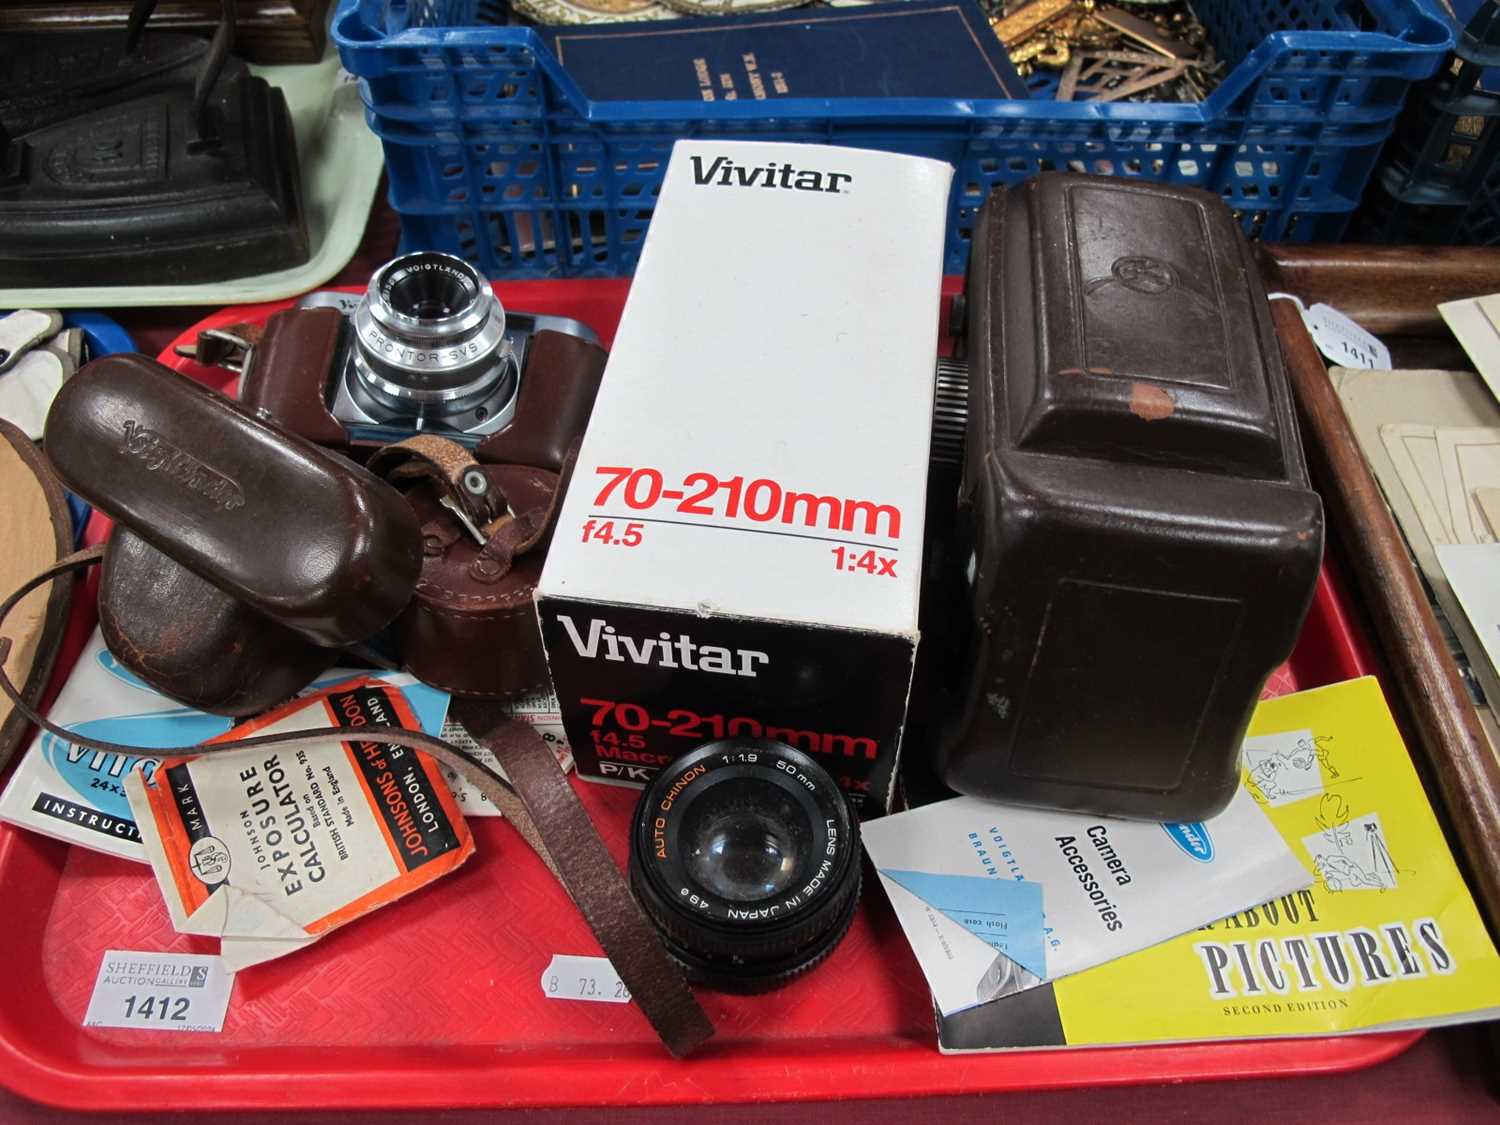 Voigtlander. Vito B and Seagull cameras, Vivitar lens.